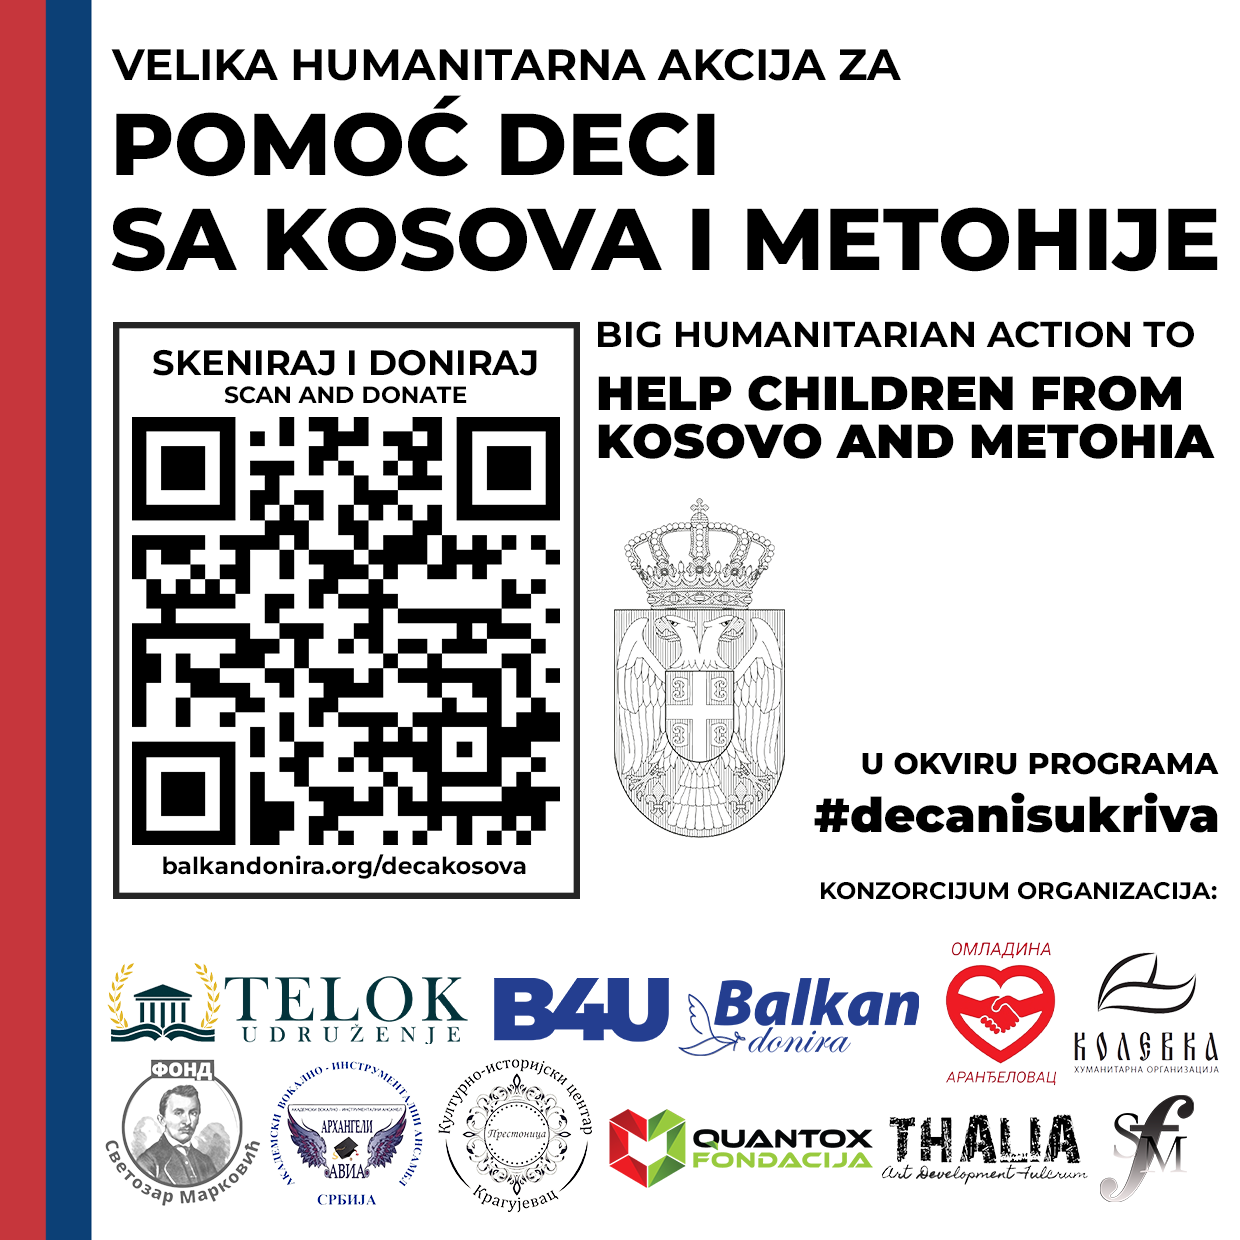 Nova humanitarna kampanja – Pomoć deci sa Kosova i Metohije